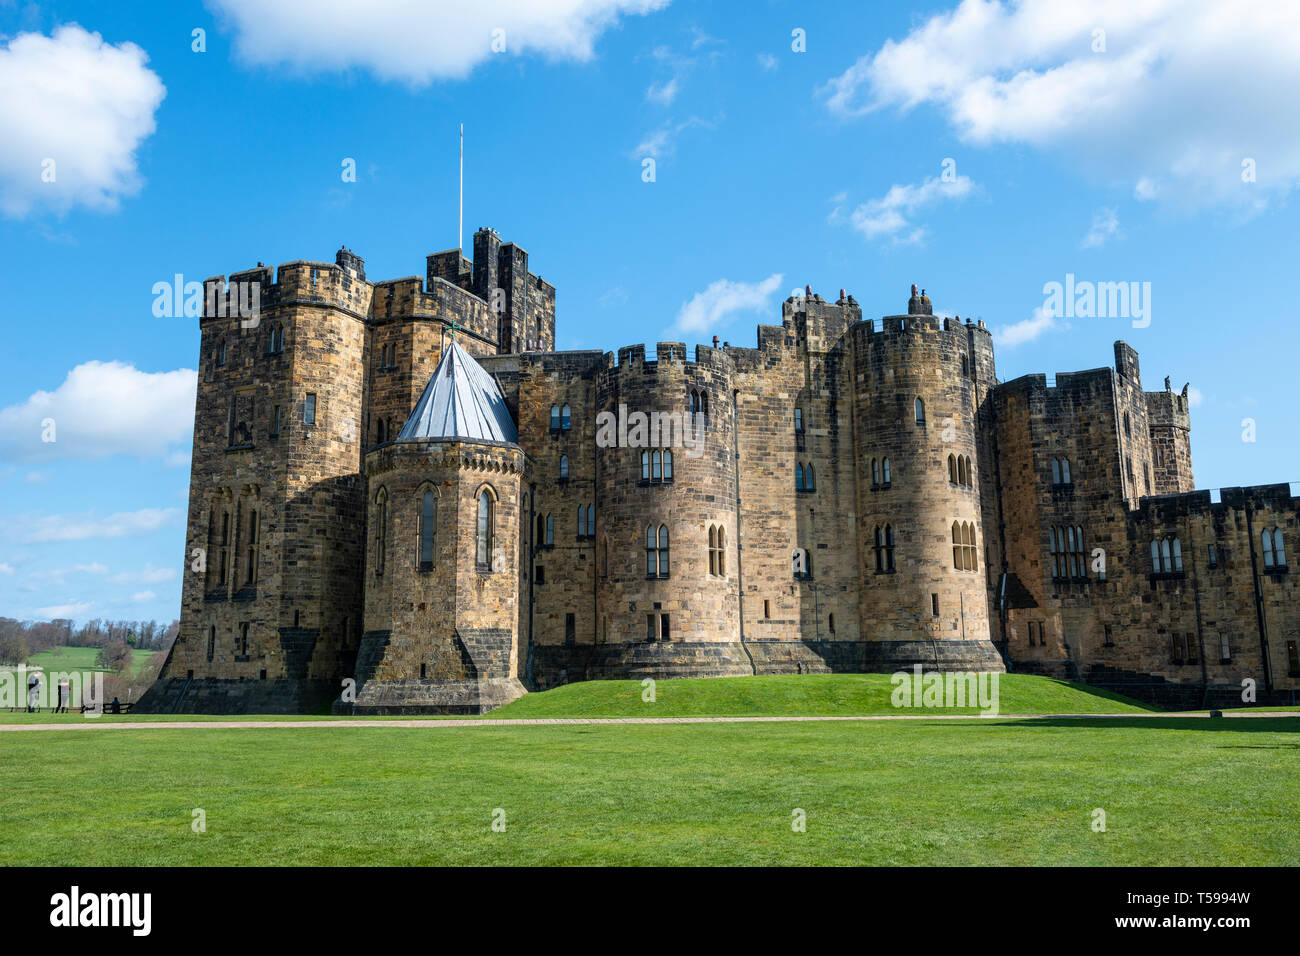 Die wichtigsten von der äußeren Bailey in Alnwick Castle in Northumberland, England, UK Halten Stockfoto